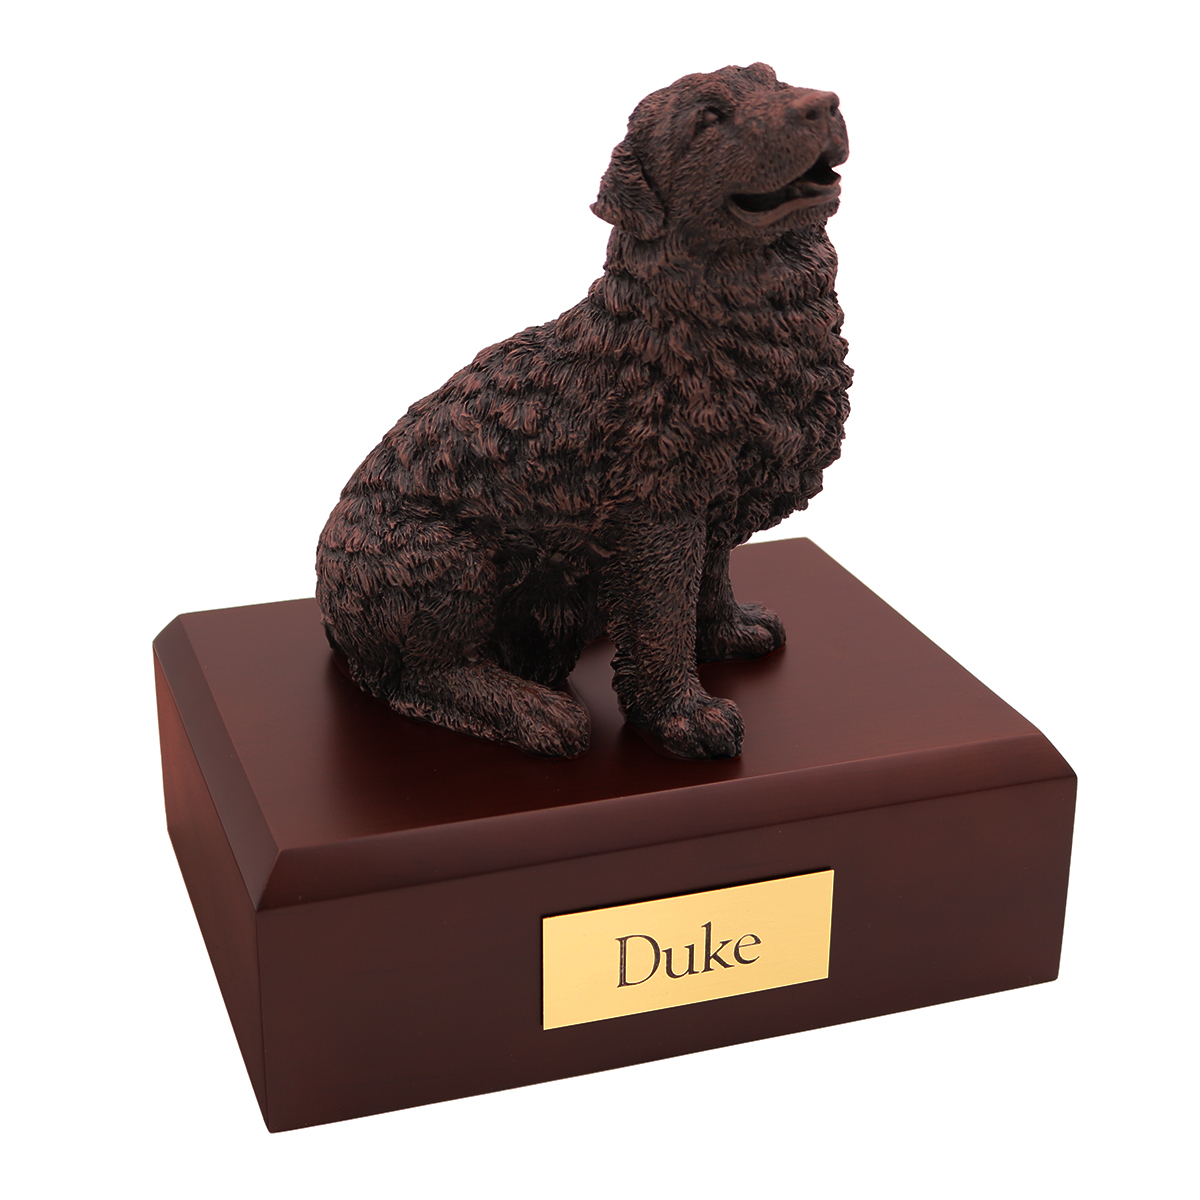 Dog, Newfoundland, Bronze - Figurine Urn